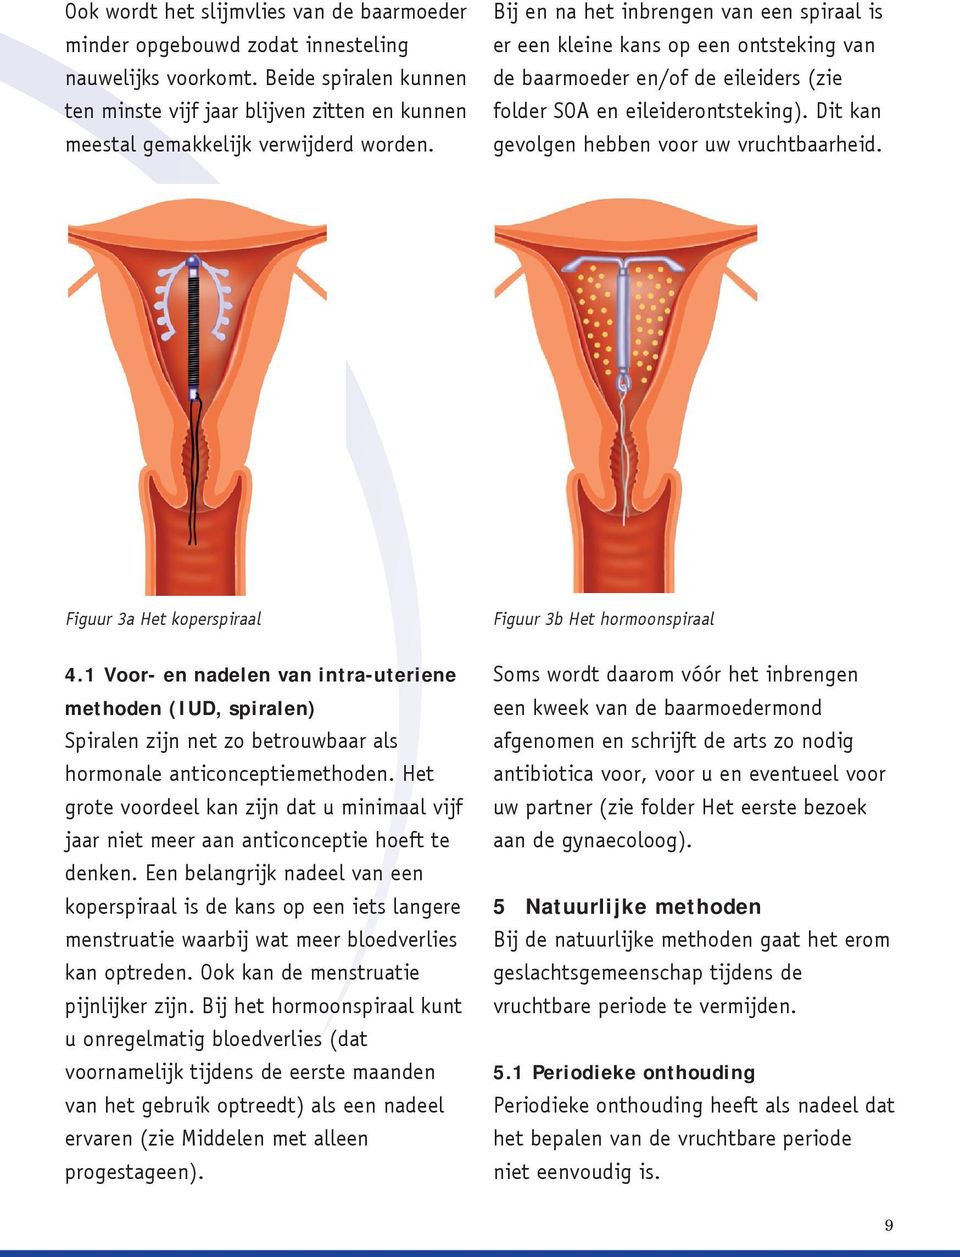 Bij en na het inbrengen van een spiraal is er een kleine kans op een ontsteking van de baarmoeder en/of de eileiders (zie folder SOA en eileiderontsteking).